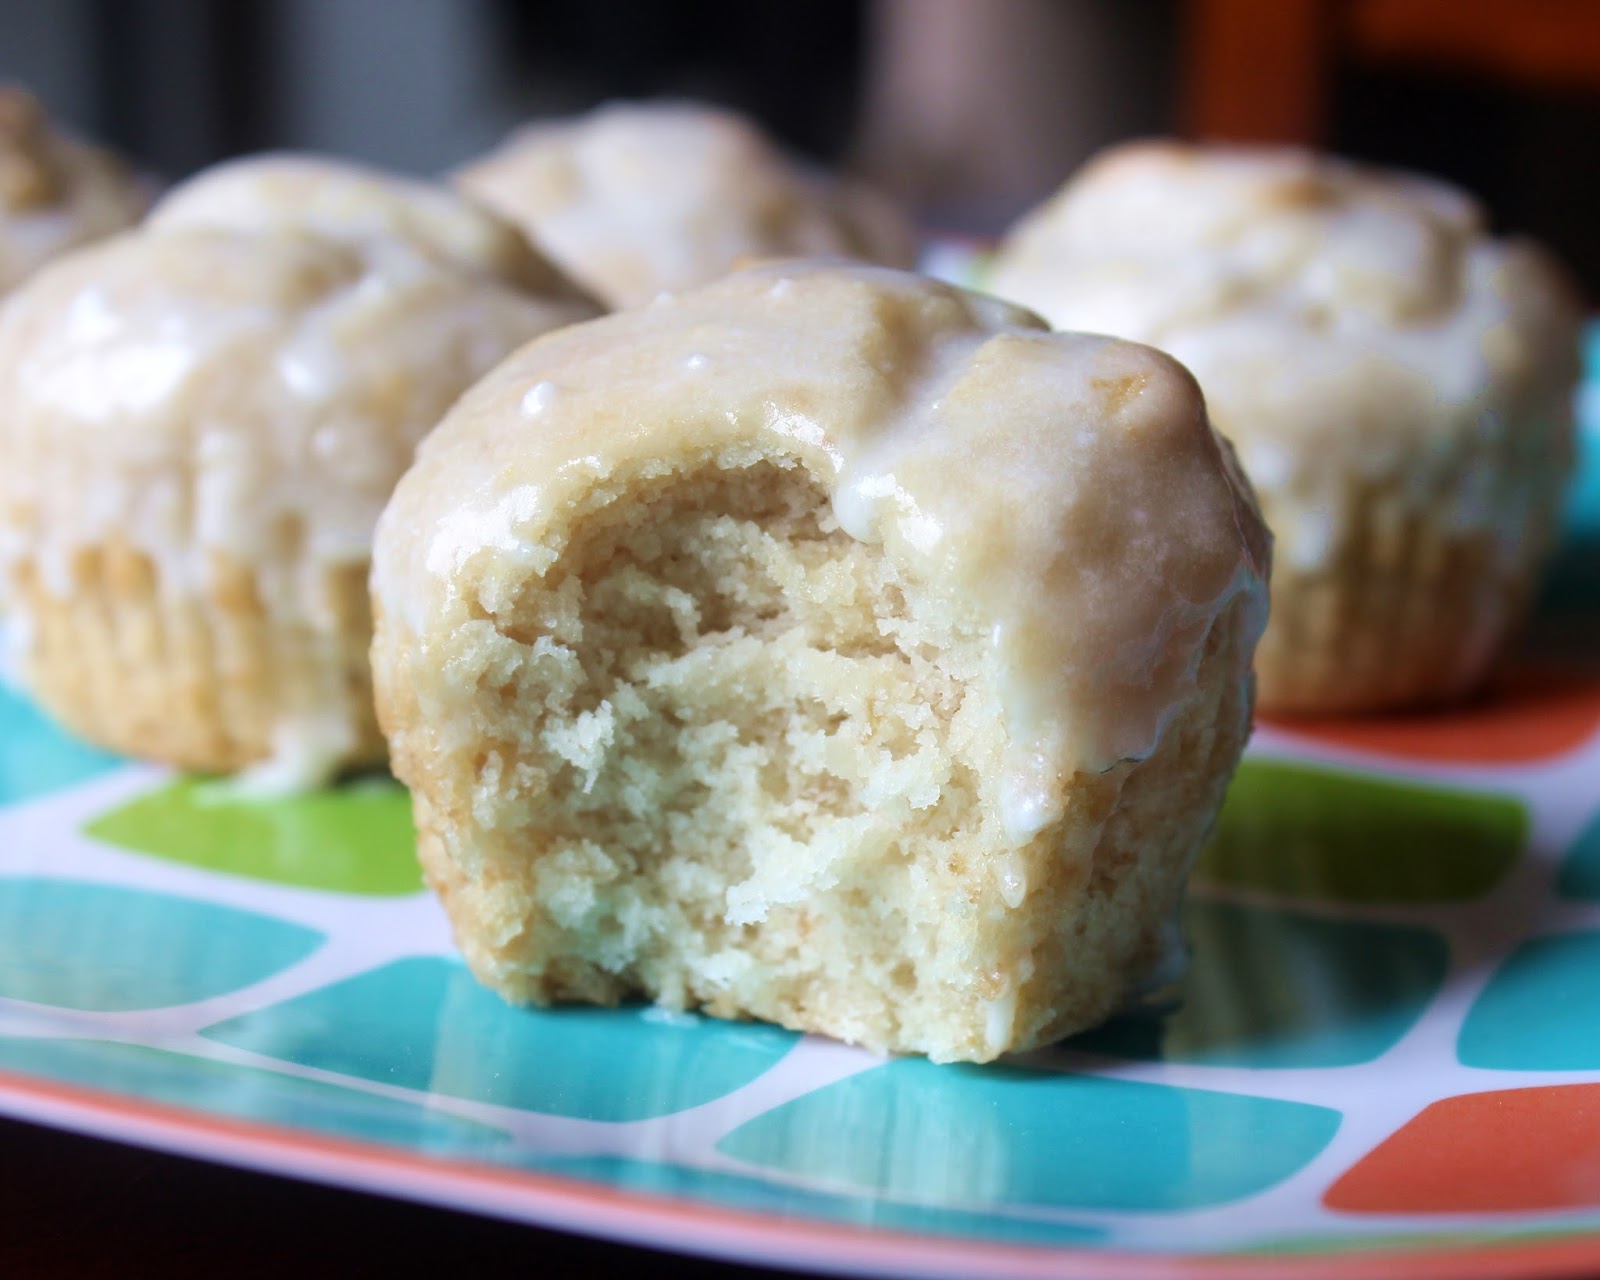 Auntie Bethany - The Best Gluten Free: Gluten Free Donut Muffins